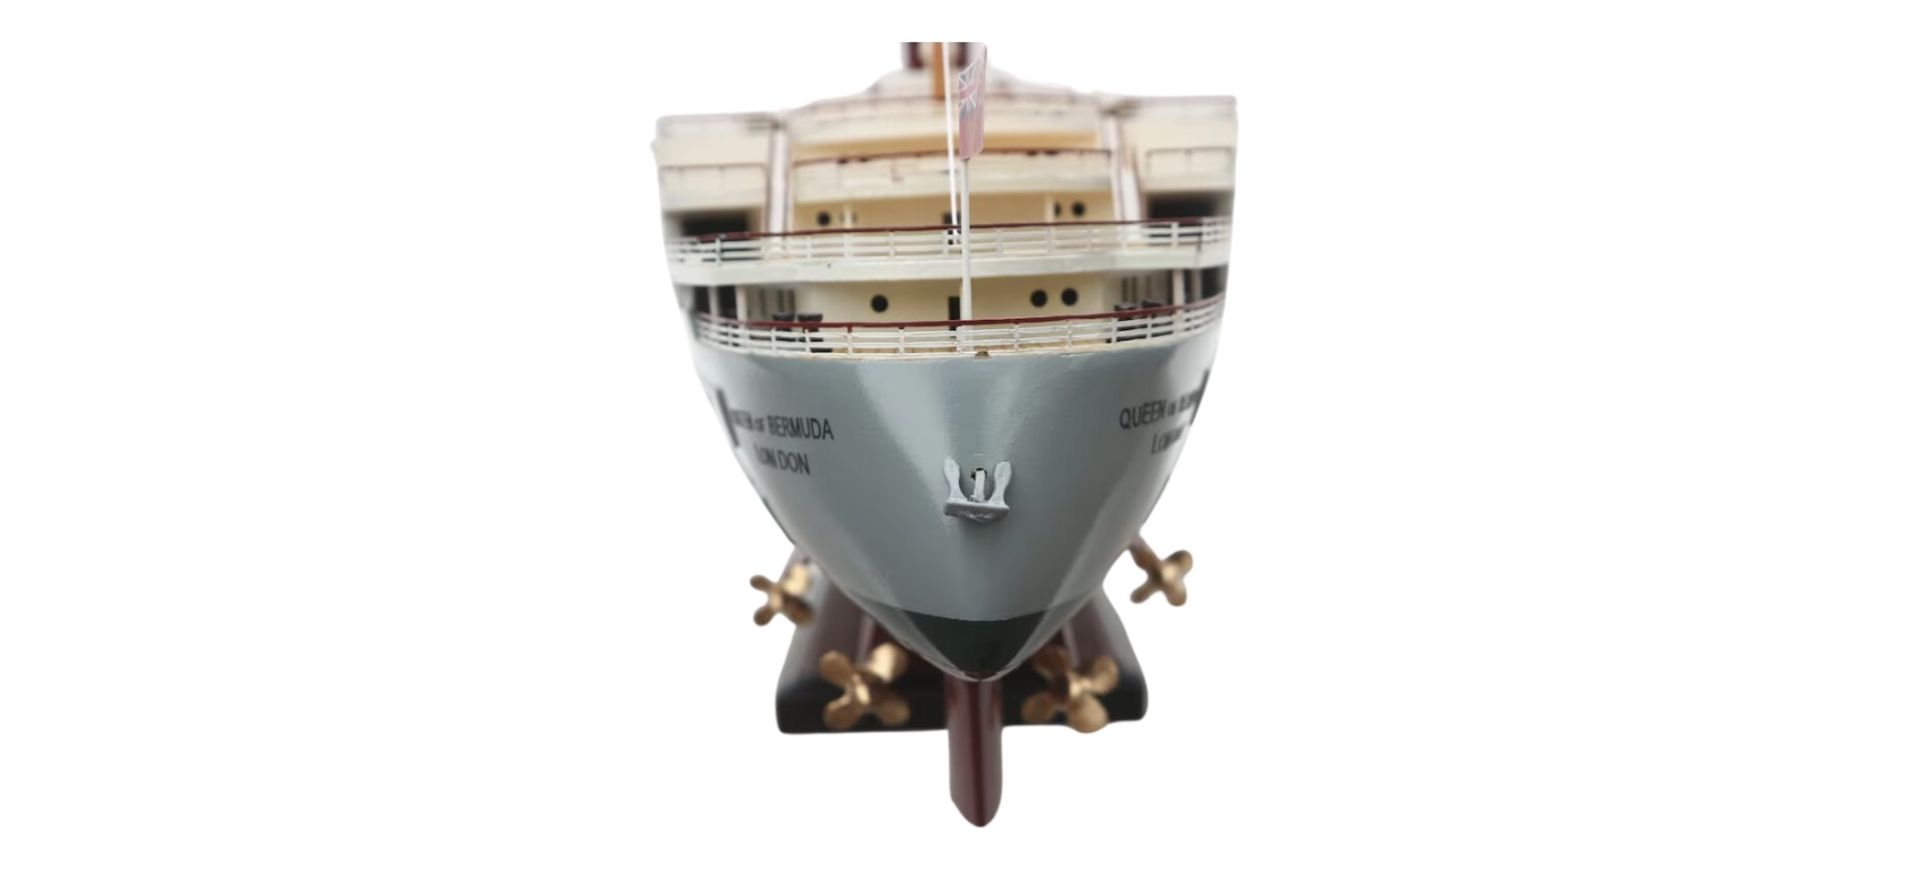 SS Queen of Bermuda Wooden Model Desk Scale Display - Bild 5 aus 8